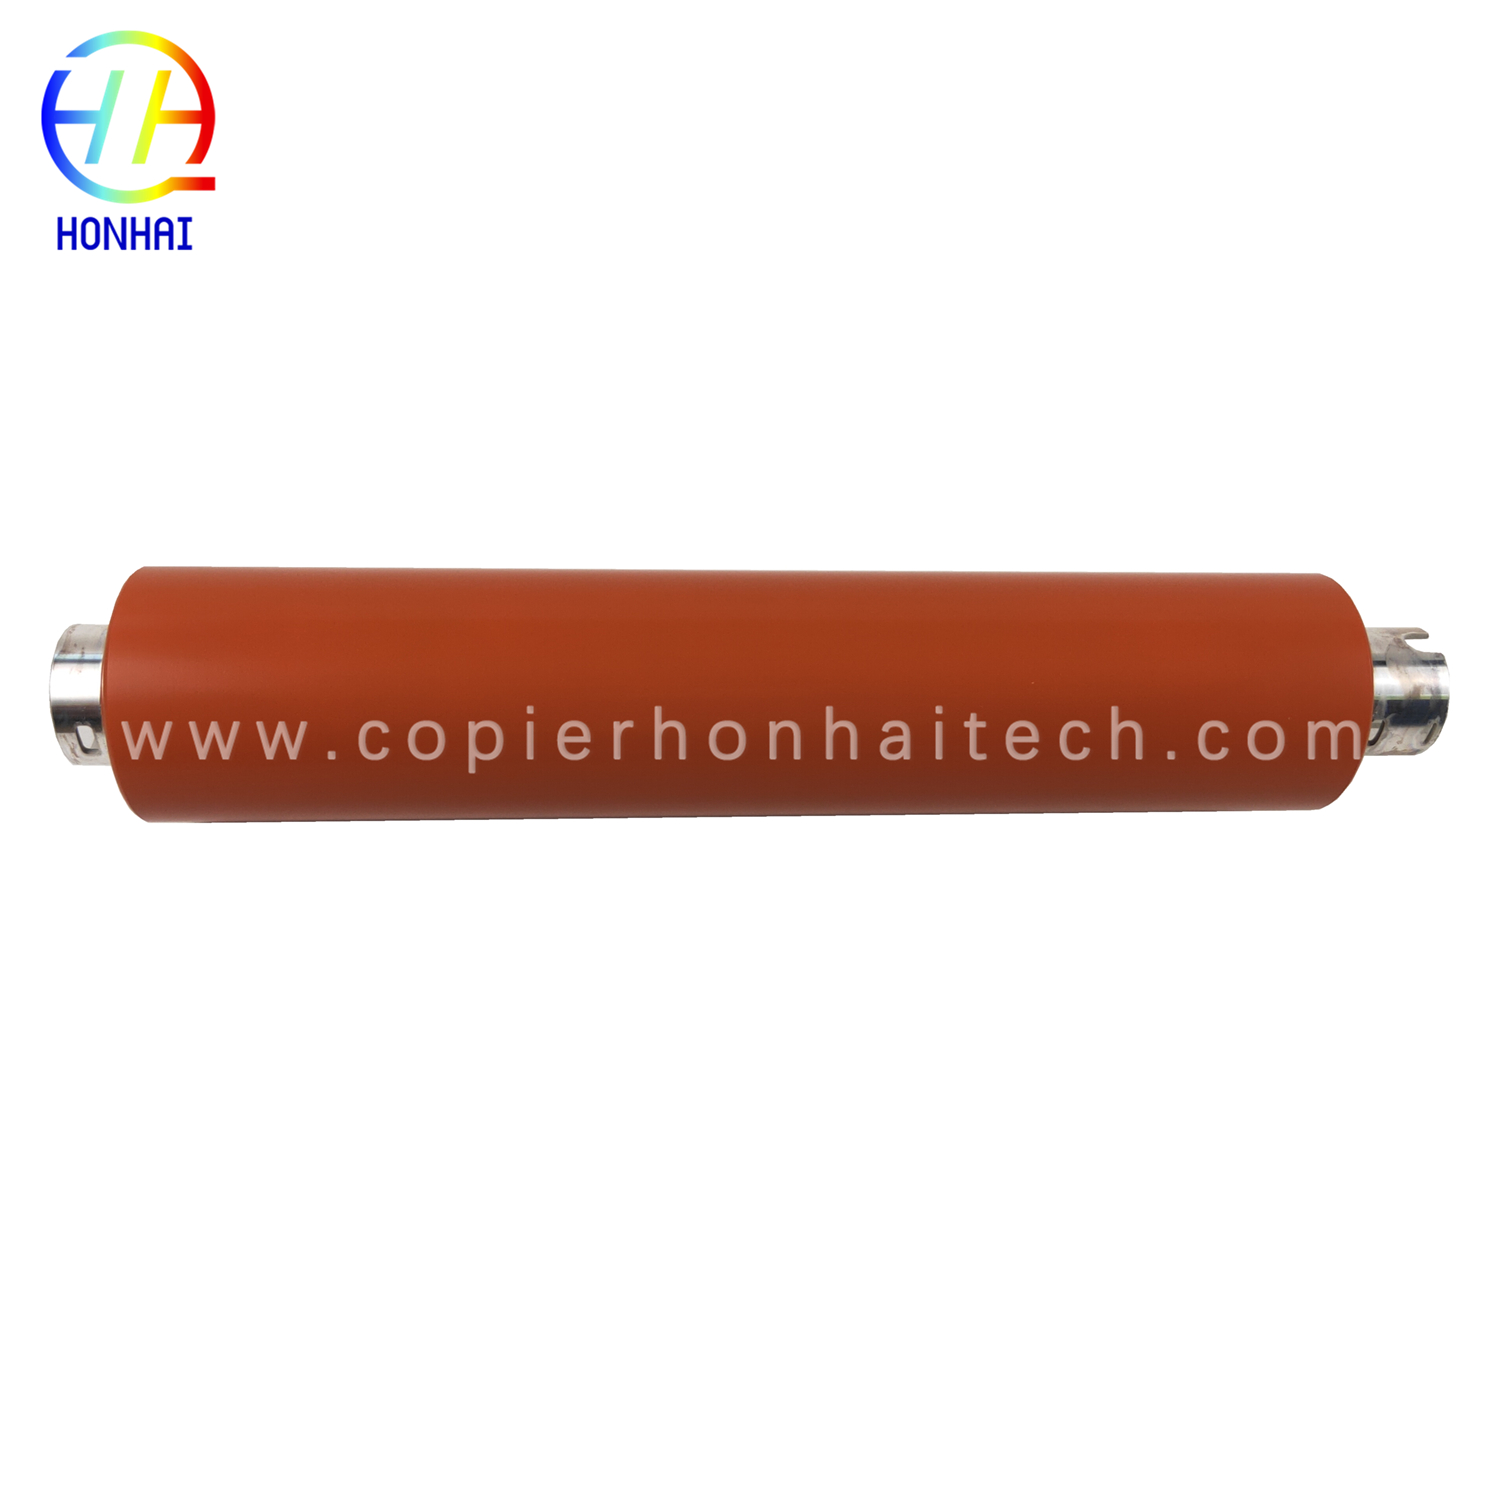 https://www.copierhonhaitech.com/original-upper-fuser-roller-for-samsung-ml-5510-ml-5512-ml-5515-jc66-02727a-product/